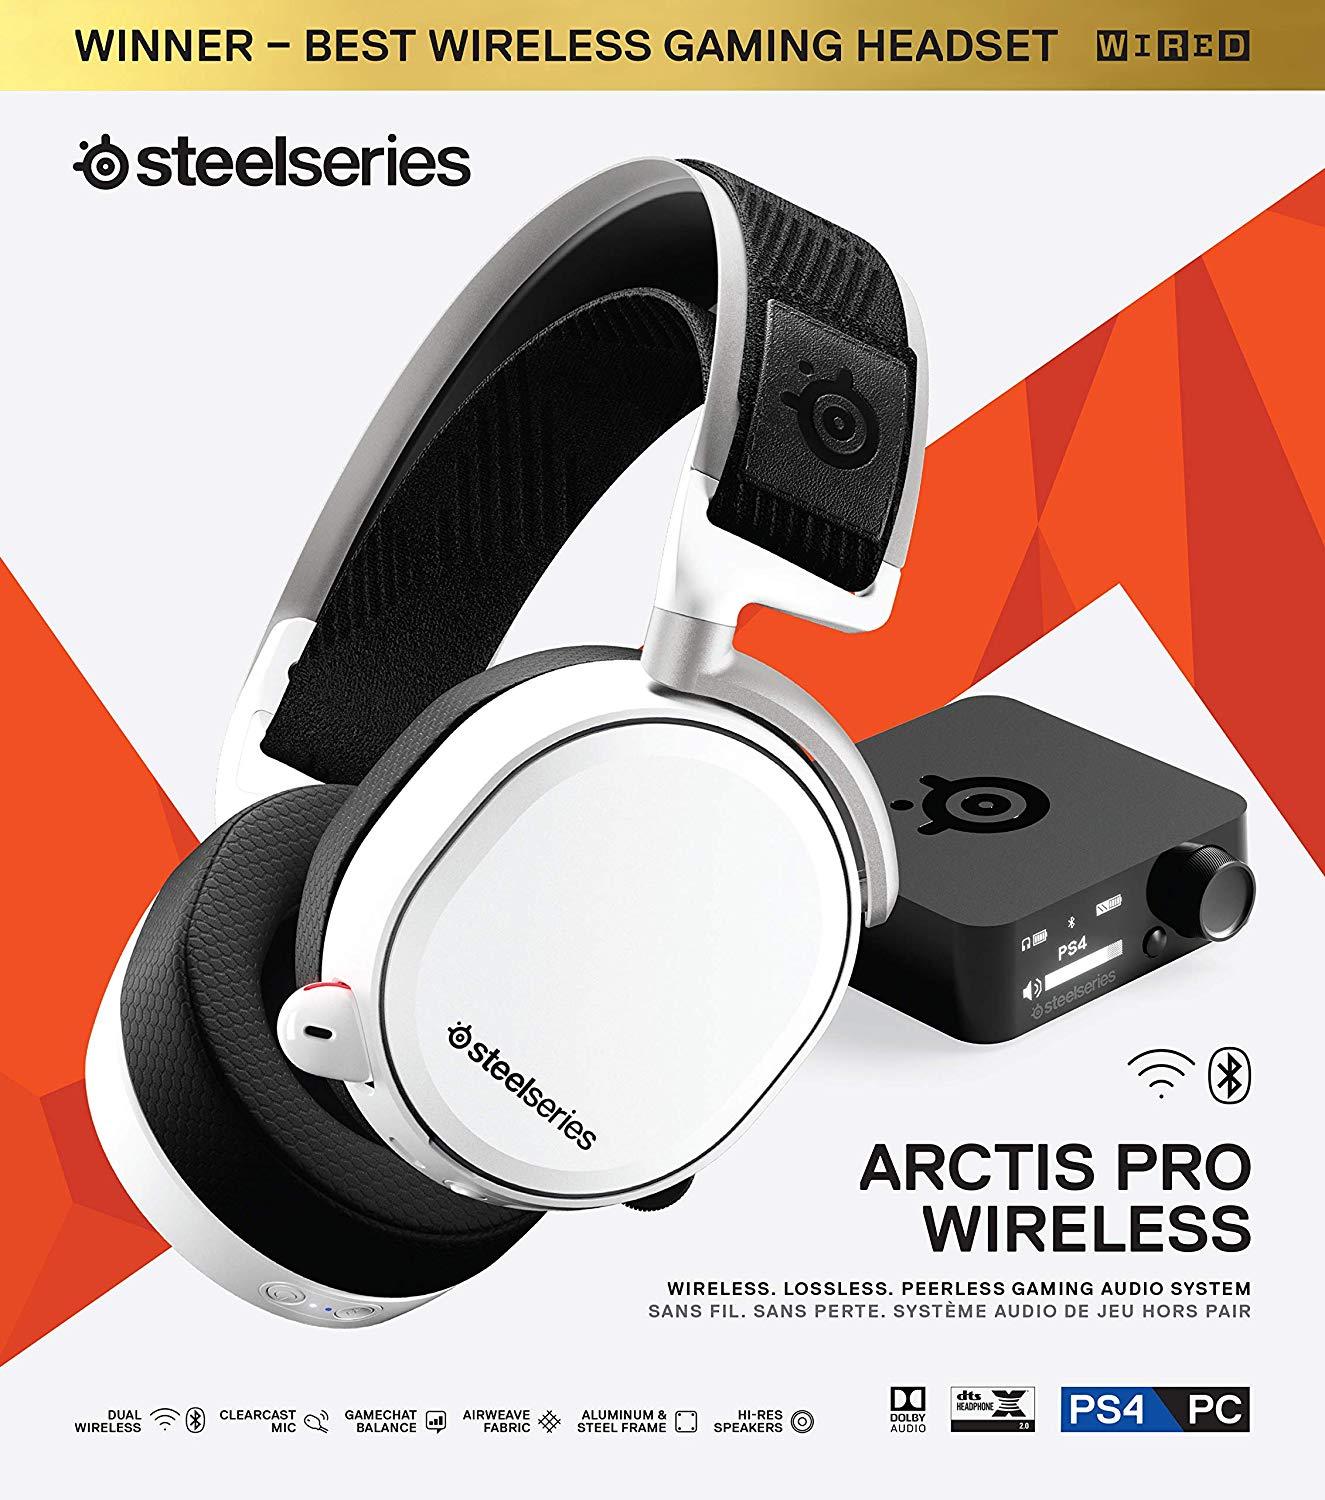 arctis pro wireless 7.1 pc